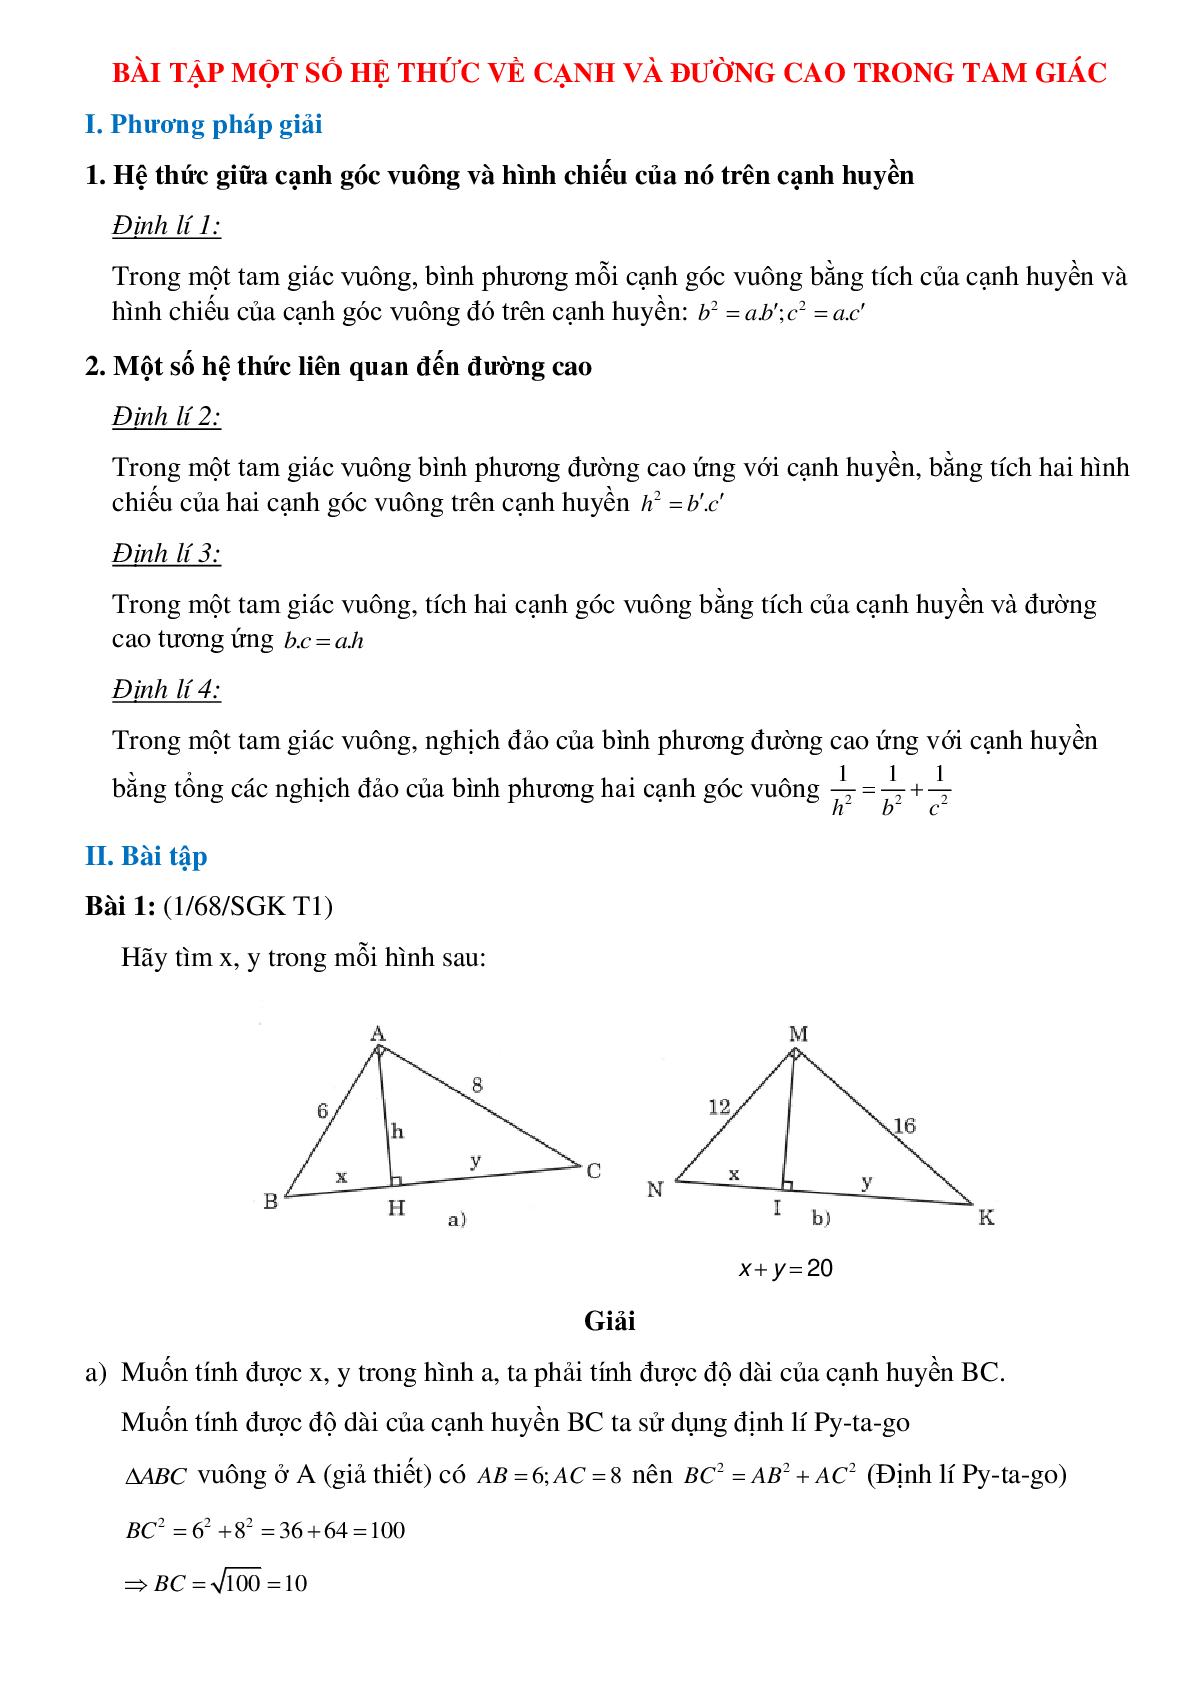 50 Bài tập Một số hệ thức về cạnh và đường cao trong tam giác (có đáp án)- Toán 9 (trang 1)